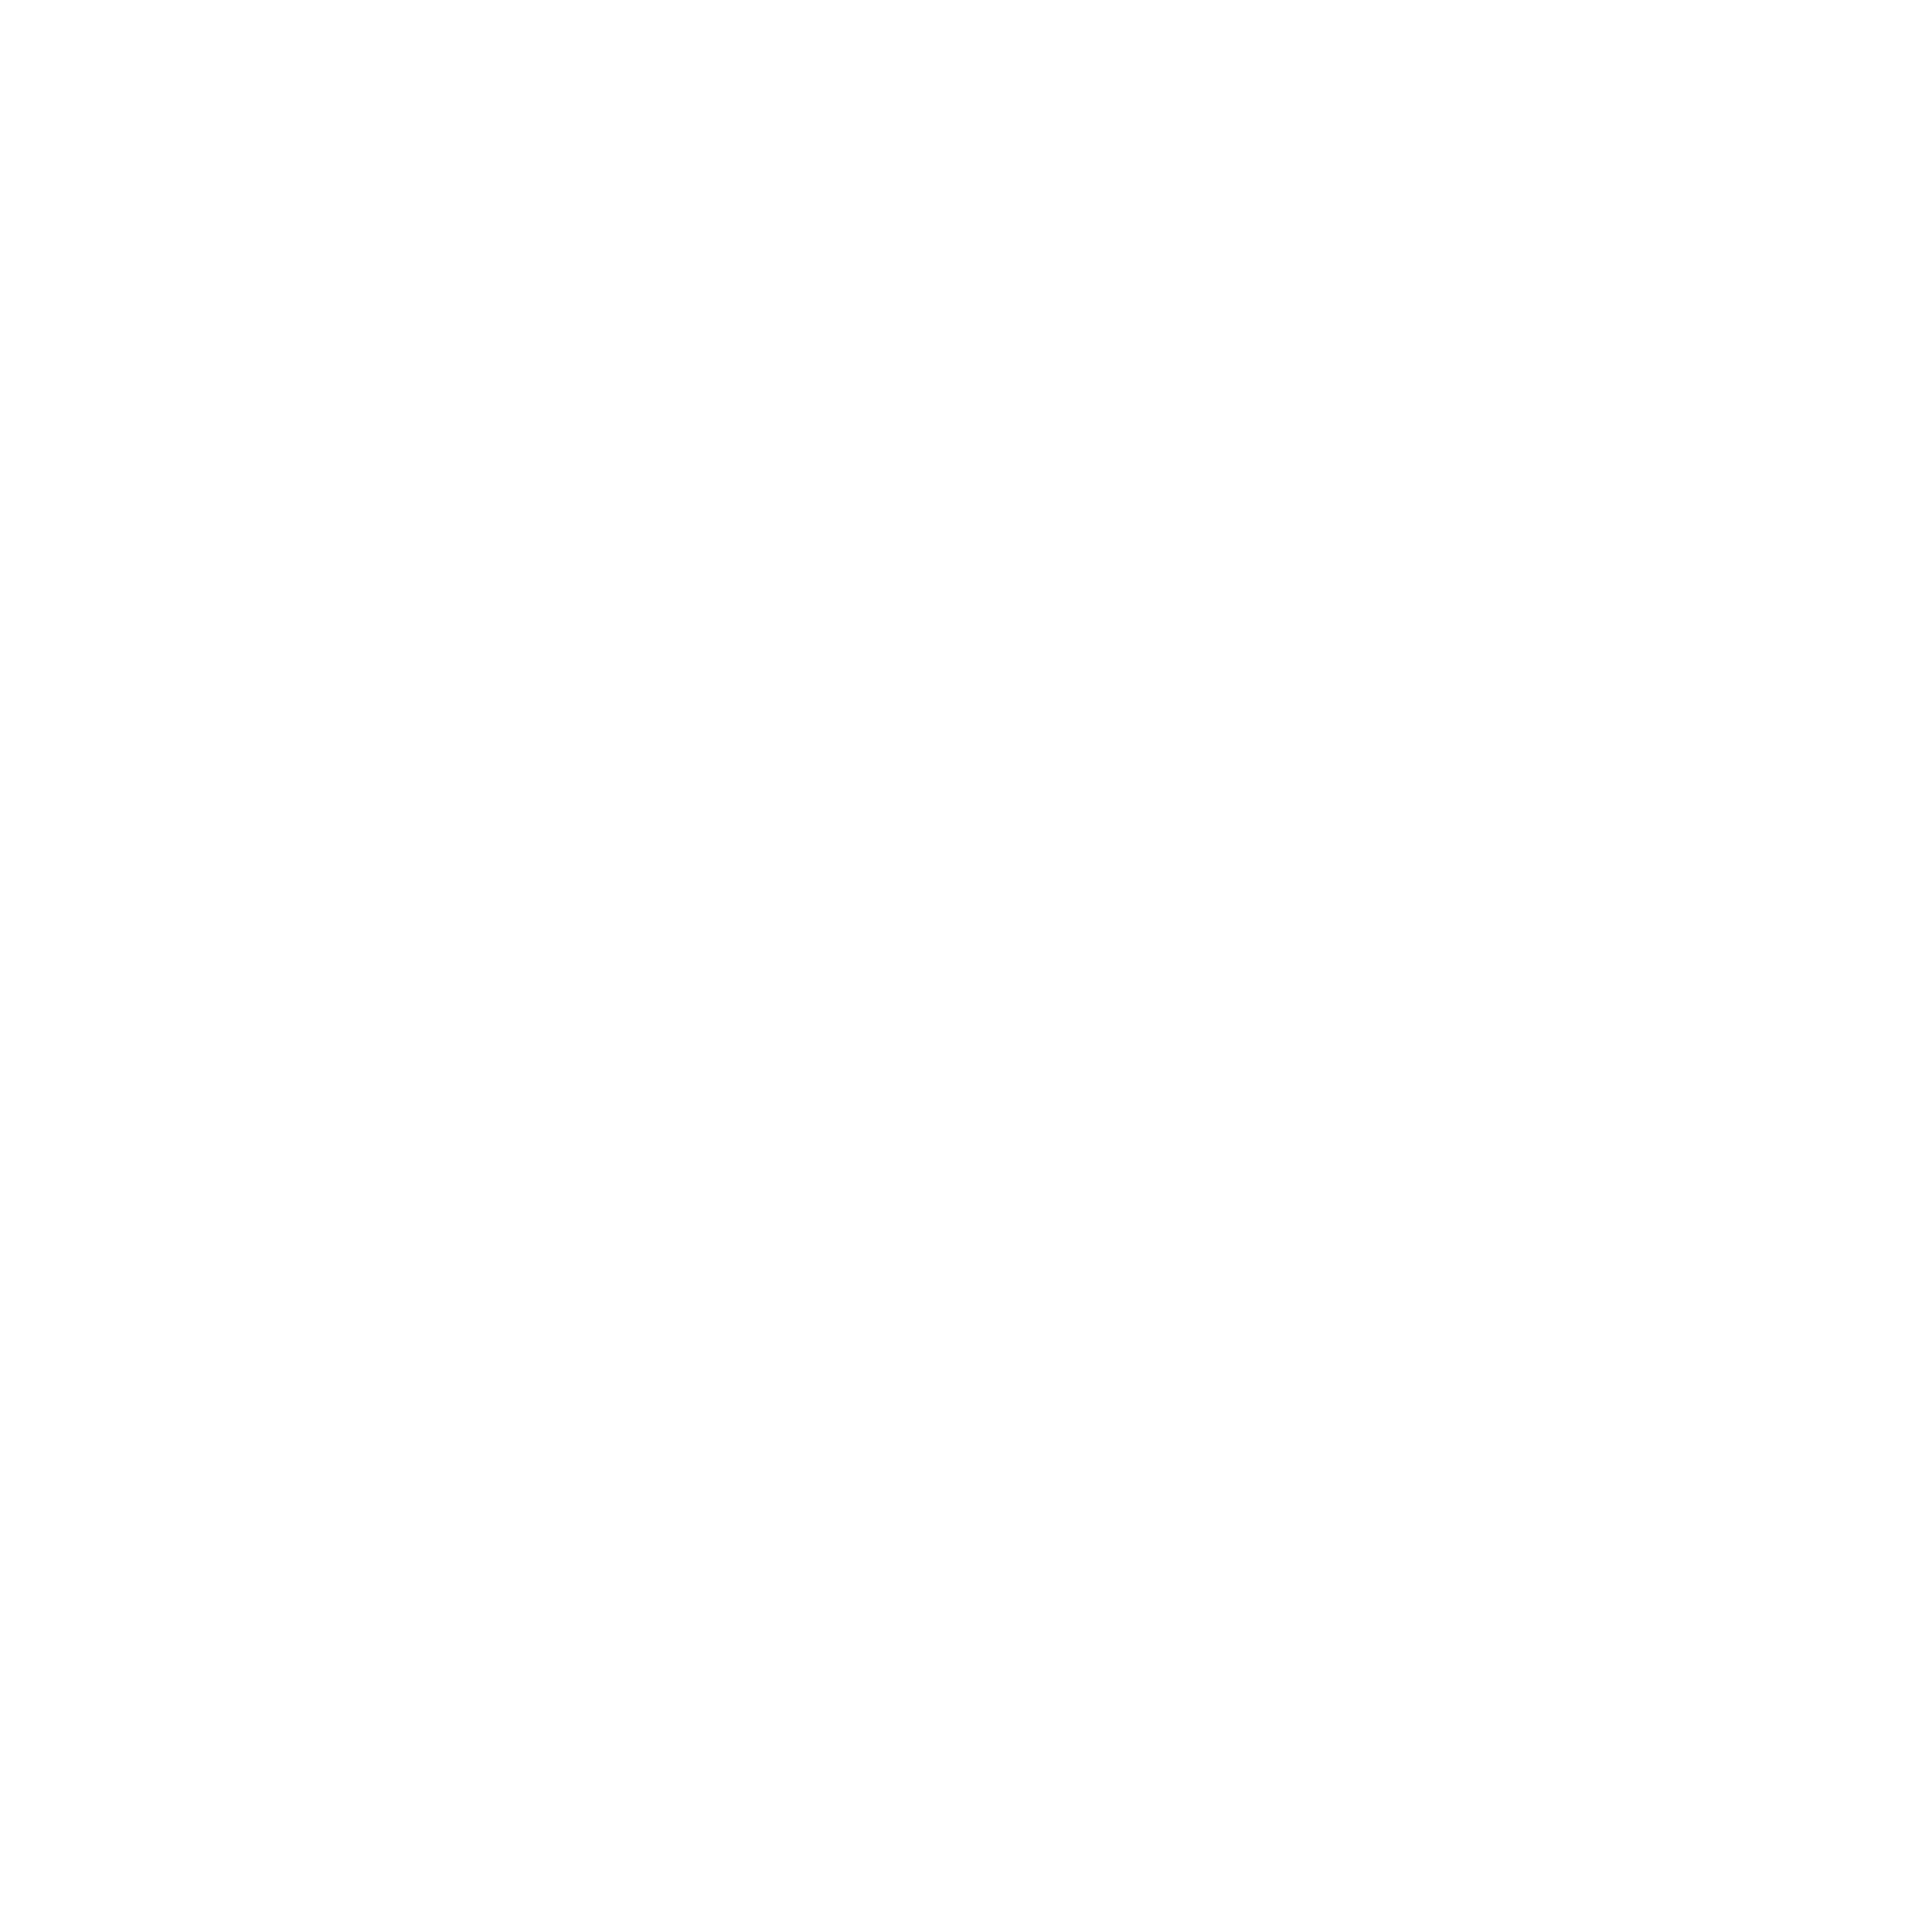 Shibu Shiva Media